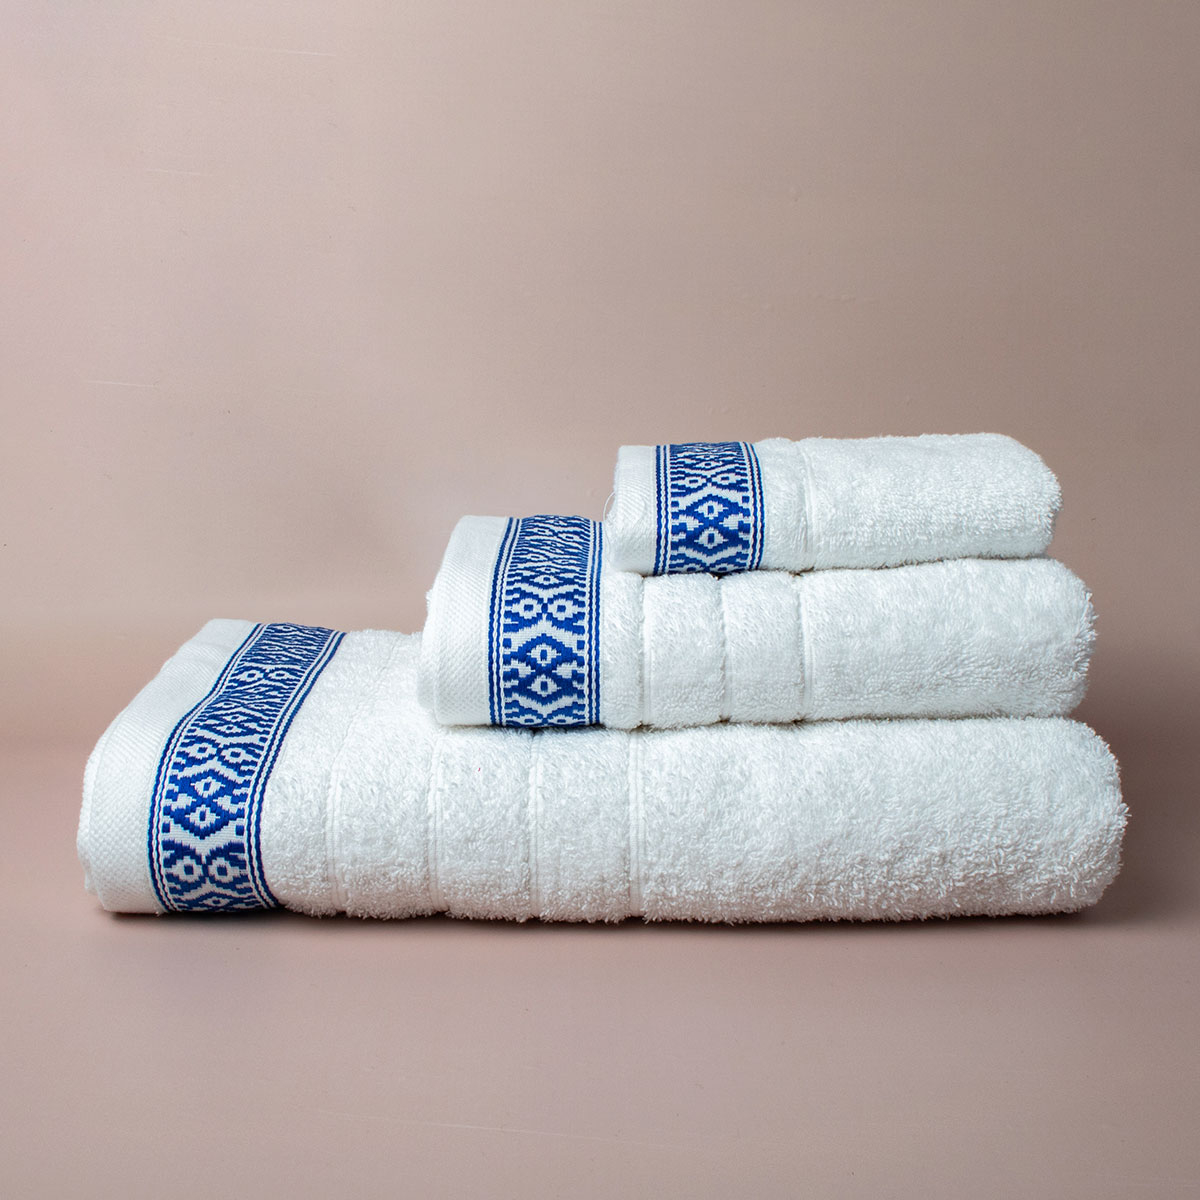 Πετσέτες Μπάνιου (Σετ 3τμχ) White Fabric Maribelle White